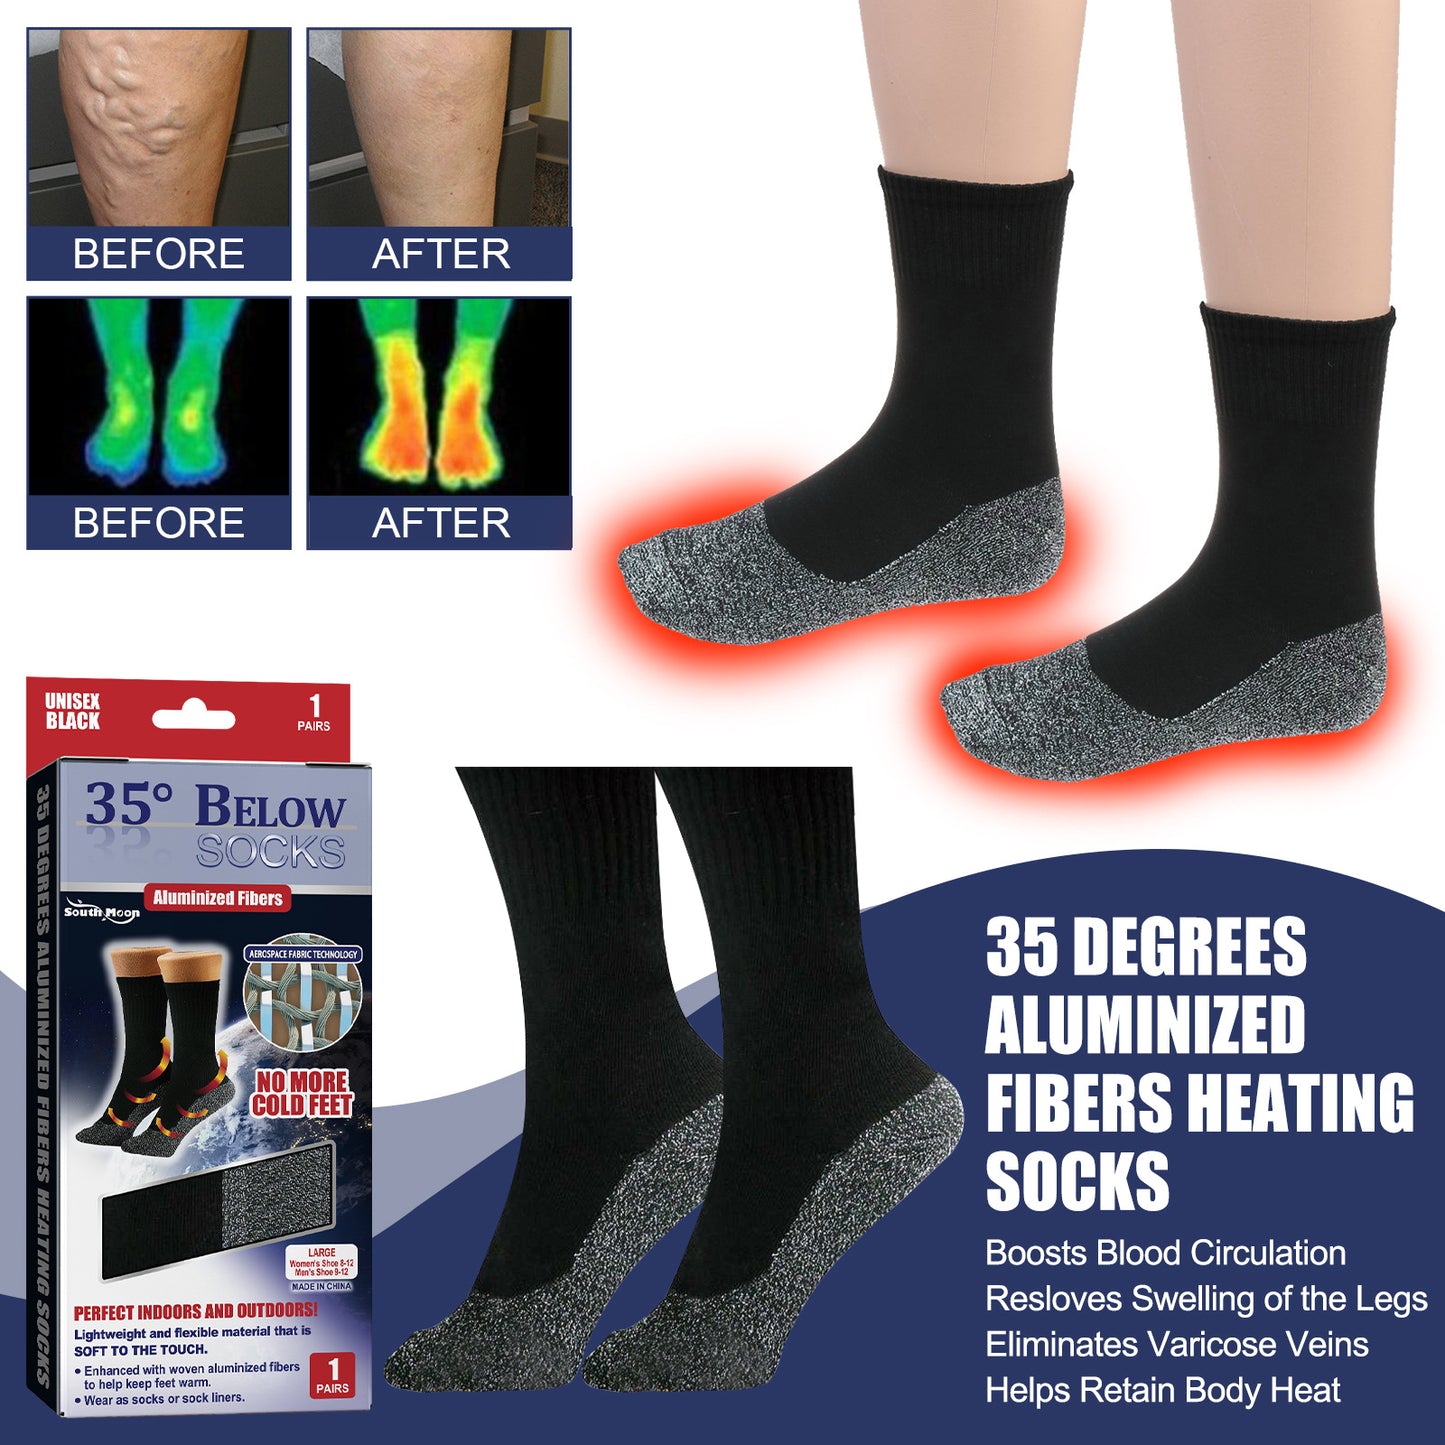 35 Degree Aluminized Fiber Fever Socks